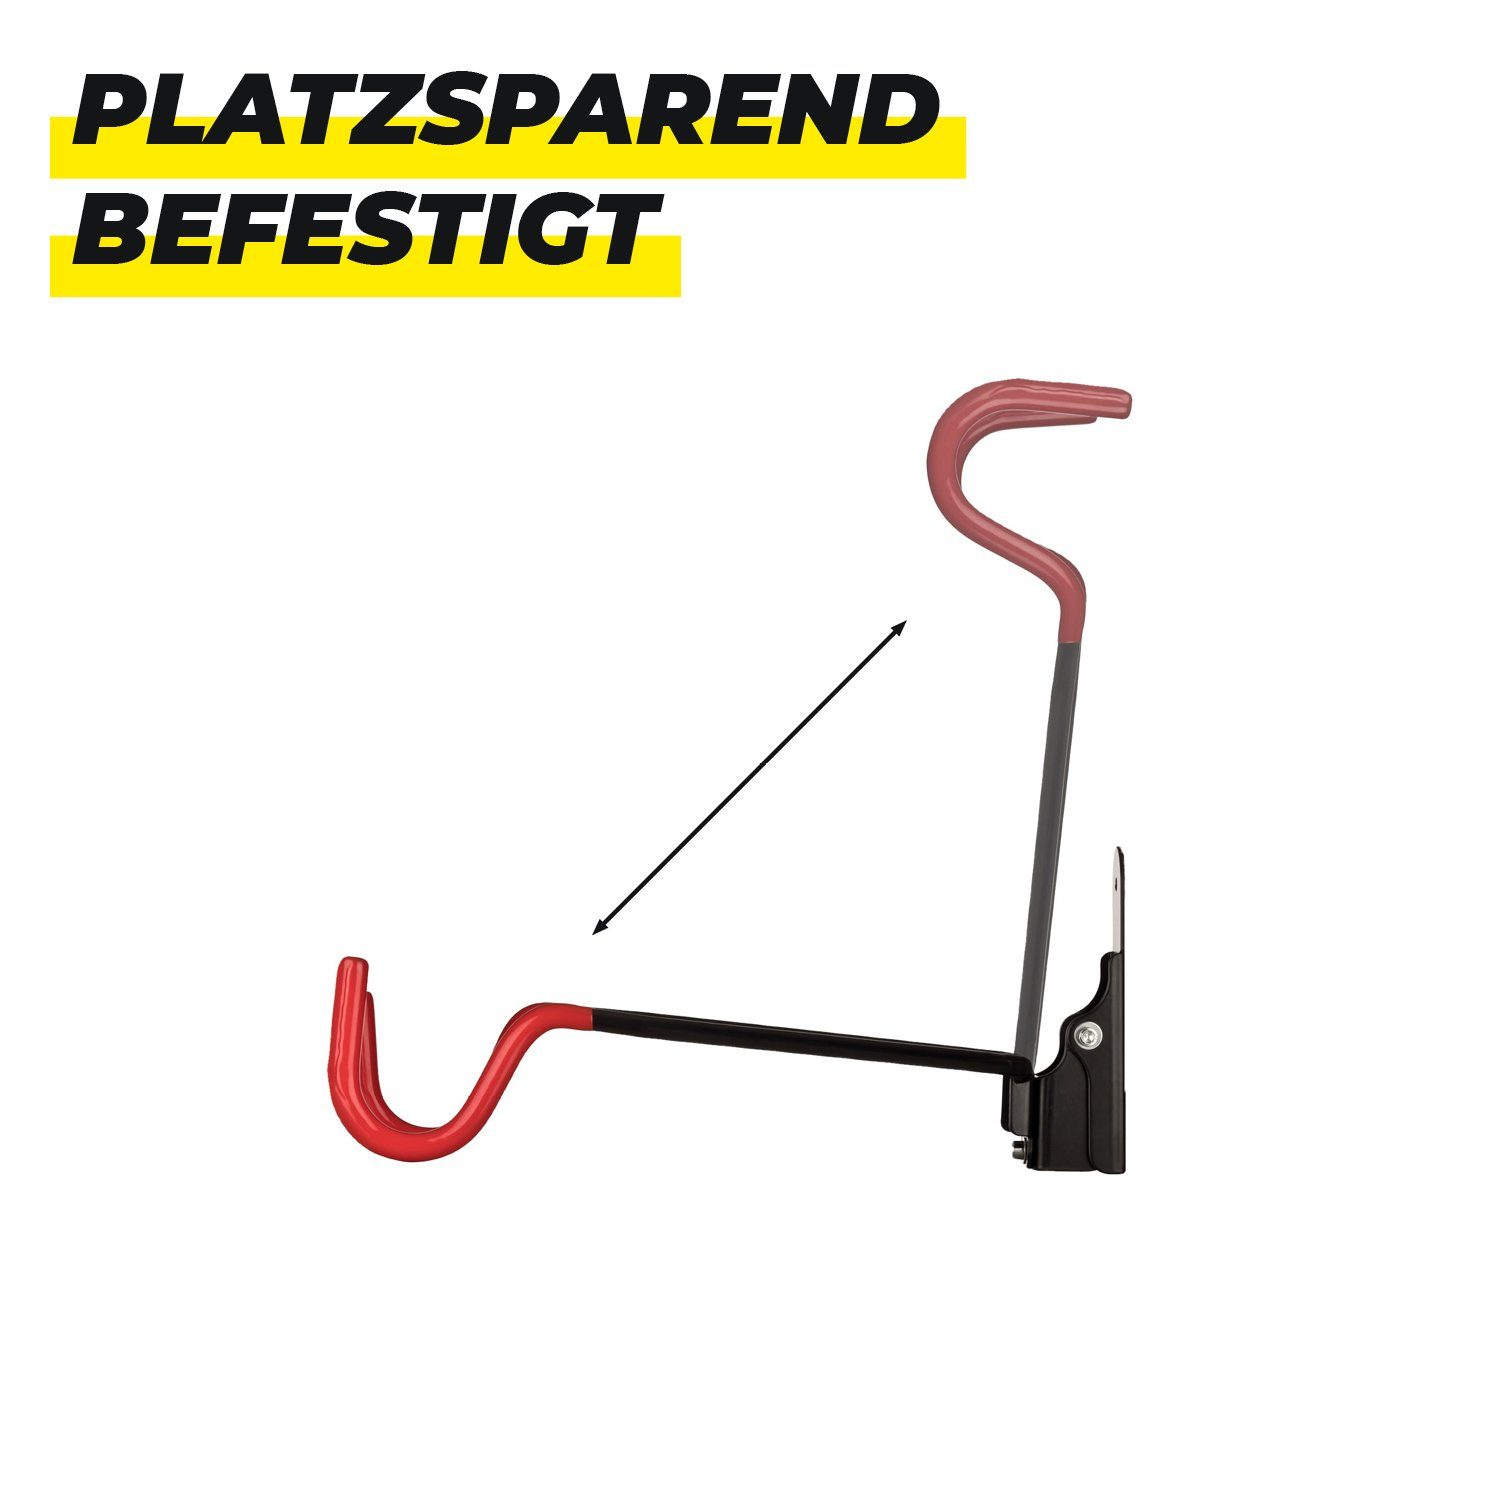 URBAN ZWEIRAD Fahrradwandhalterung inkl. Rahmenschutz mit Montagematerial Rot Fahrrad-Wandhalterung klappbare